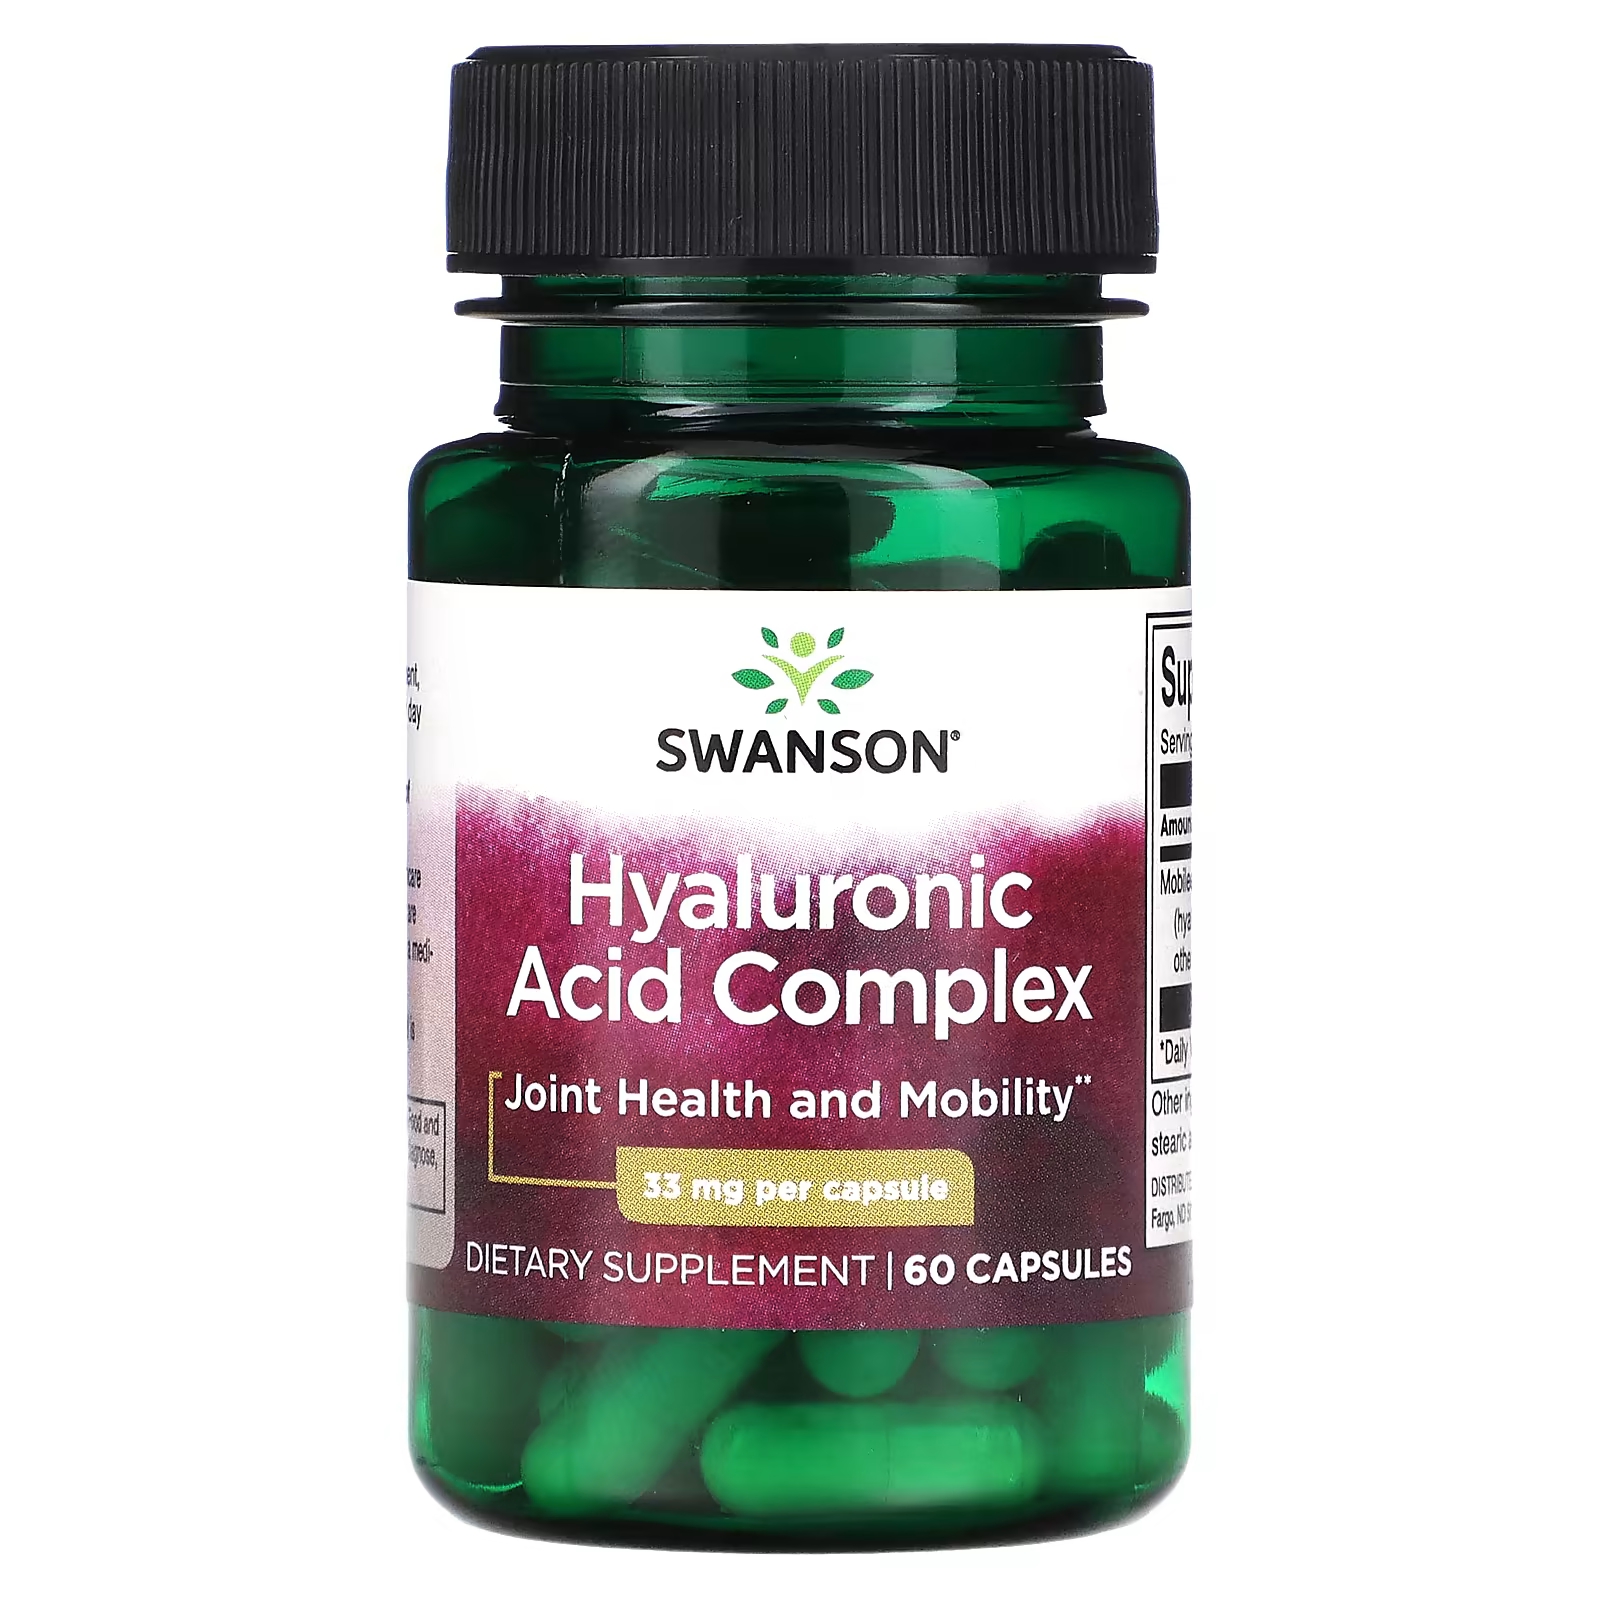 Пищевая добавка Swanson Комплекс гиалуроновой кислоты 33 мг, 60 капсул